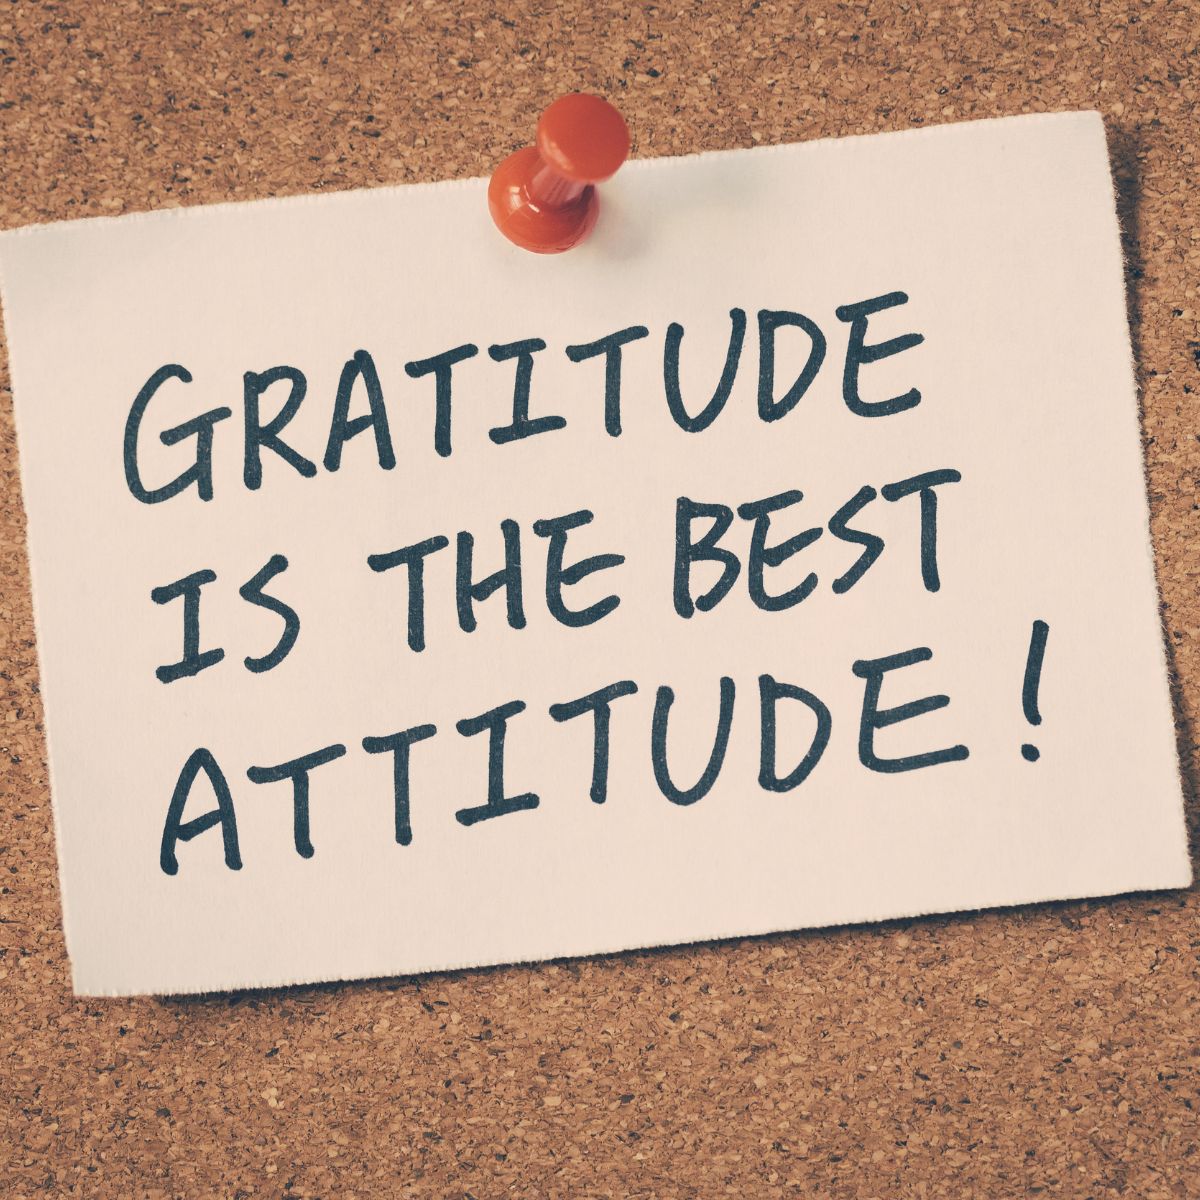 Gratitude is the best Attitude!